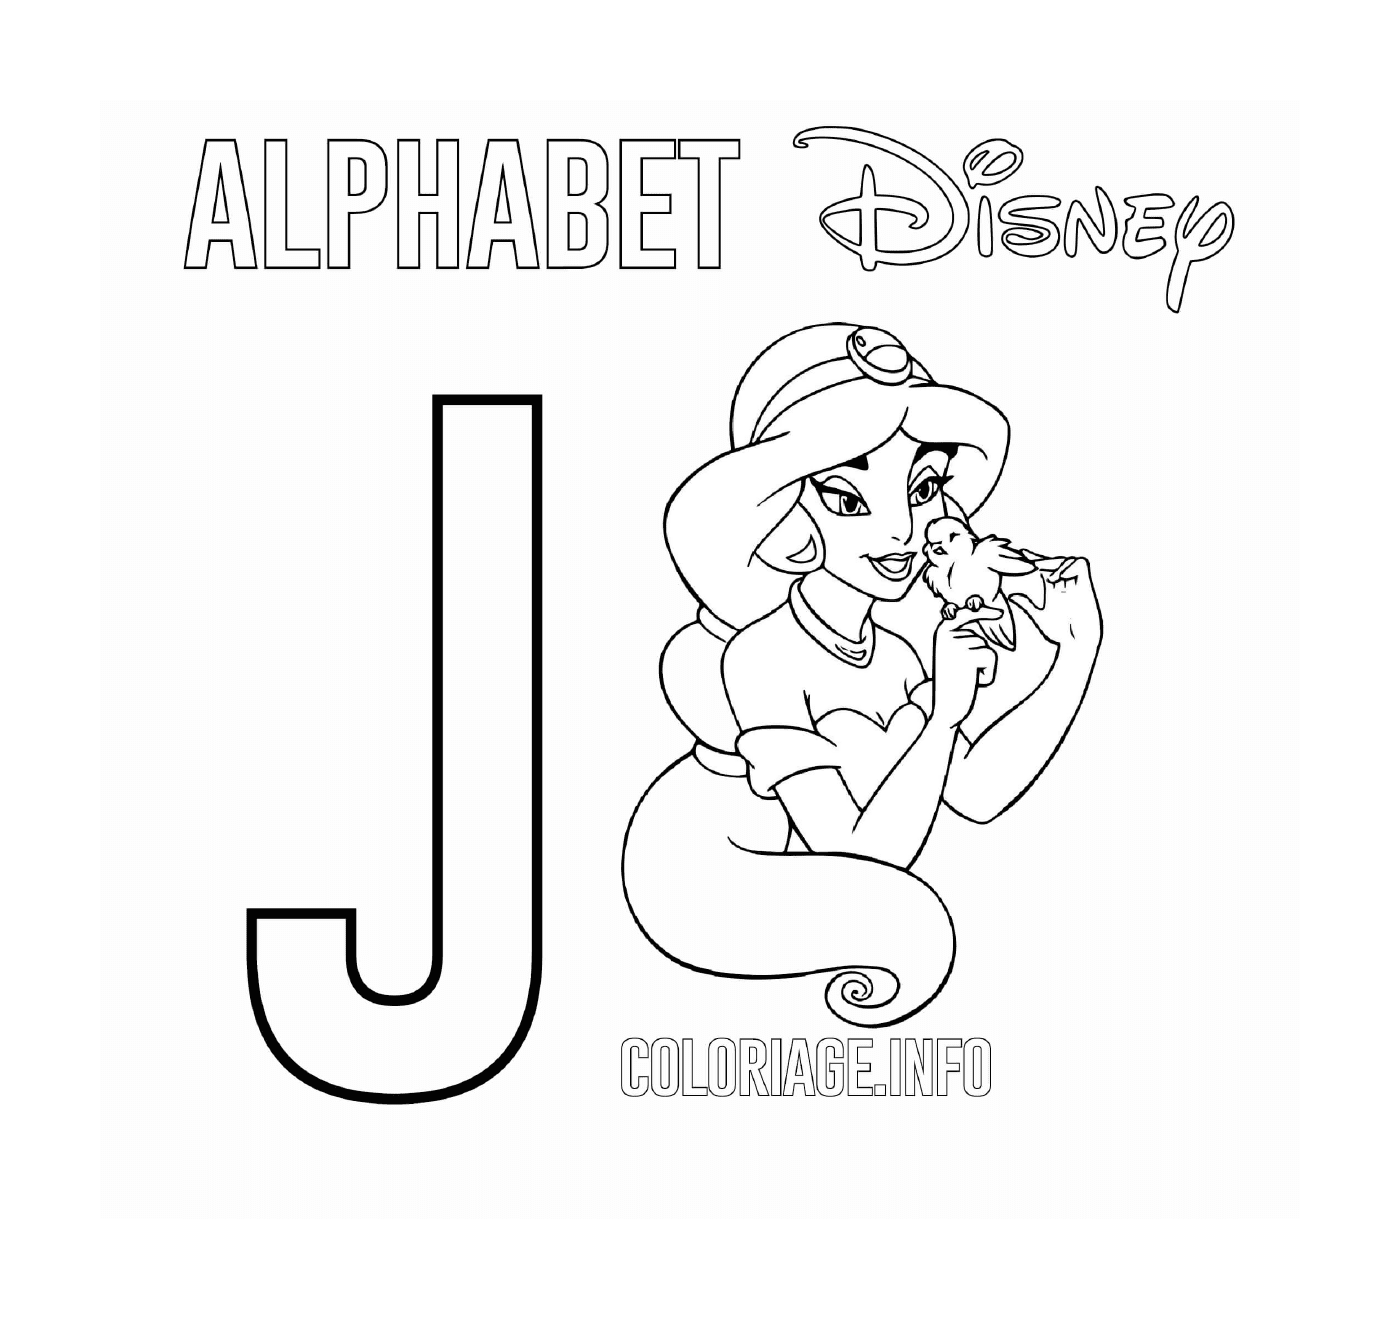  La carta J para Jasmine 